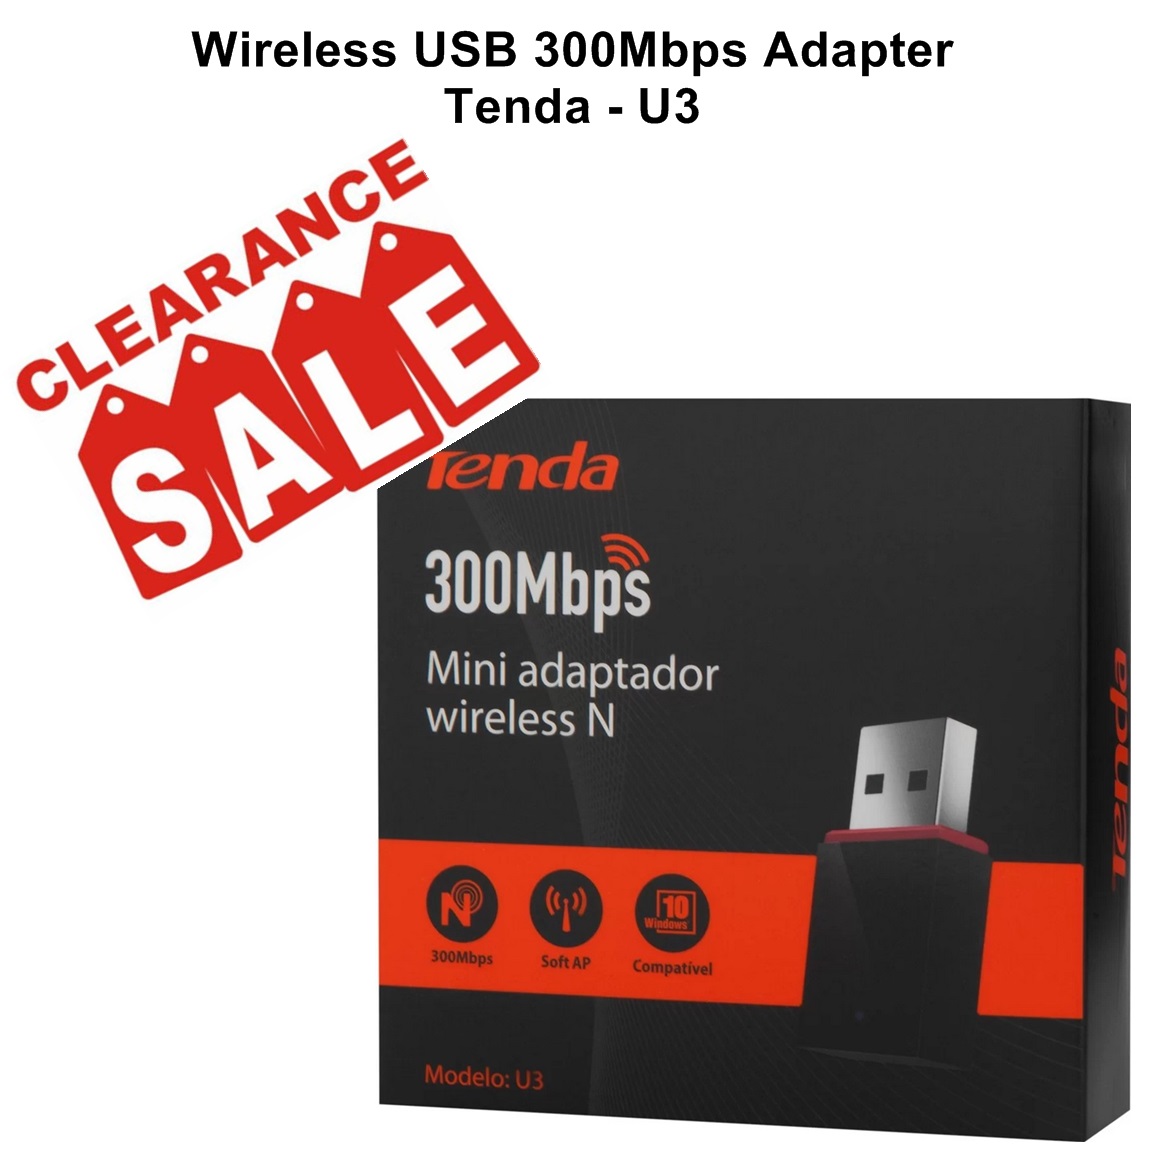 Wireless USB 300Mbps Adapter Tenda - U3